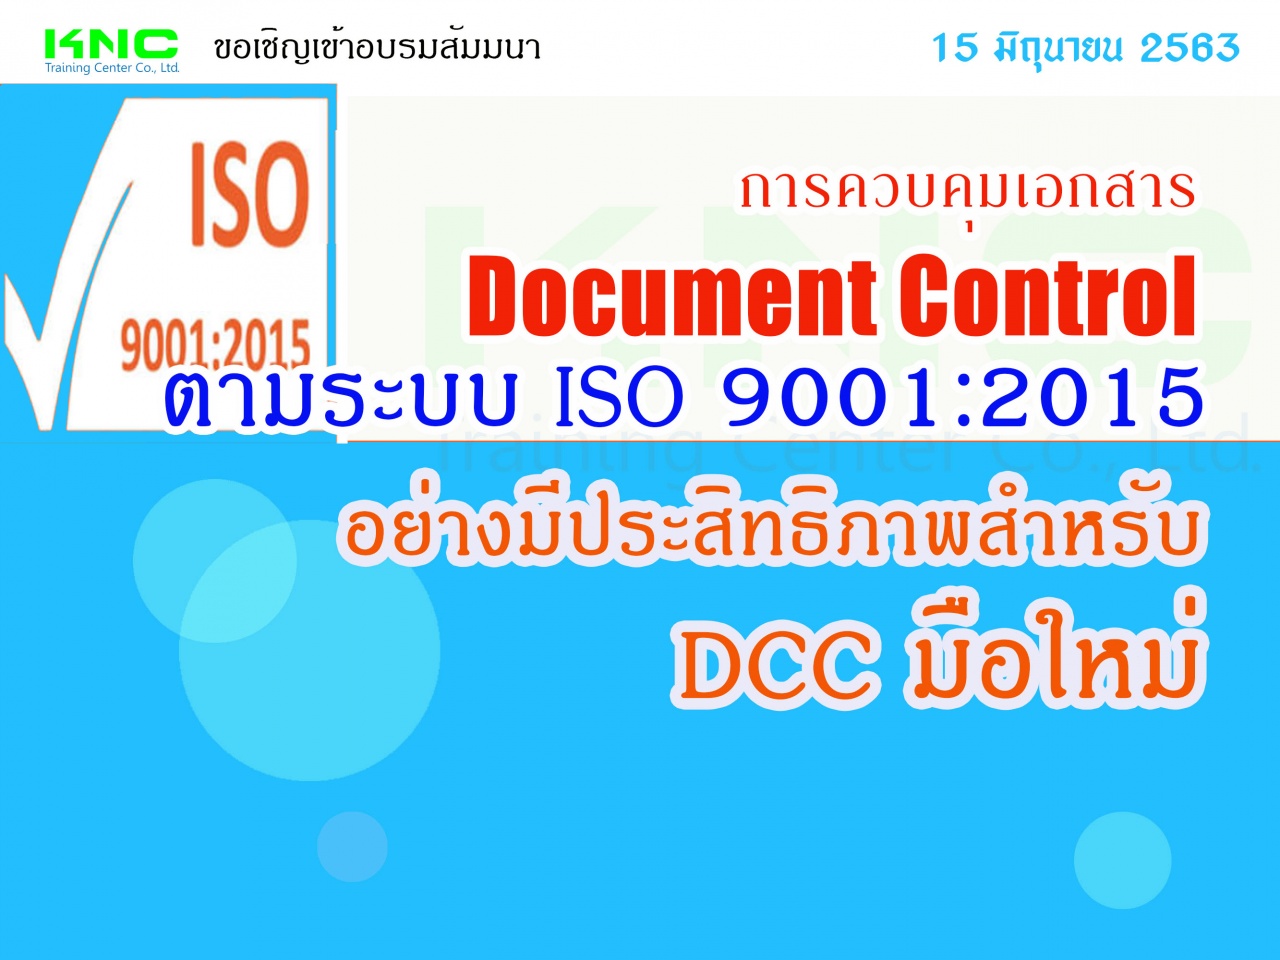 การควบคุมเอกสาร Document Control ตามระบบ ISO 9001:2015  อย่างมีประสิทธิภาพสำหรับ DCC มือใหม่